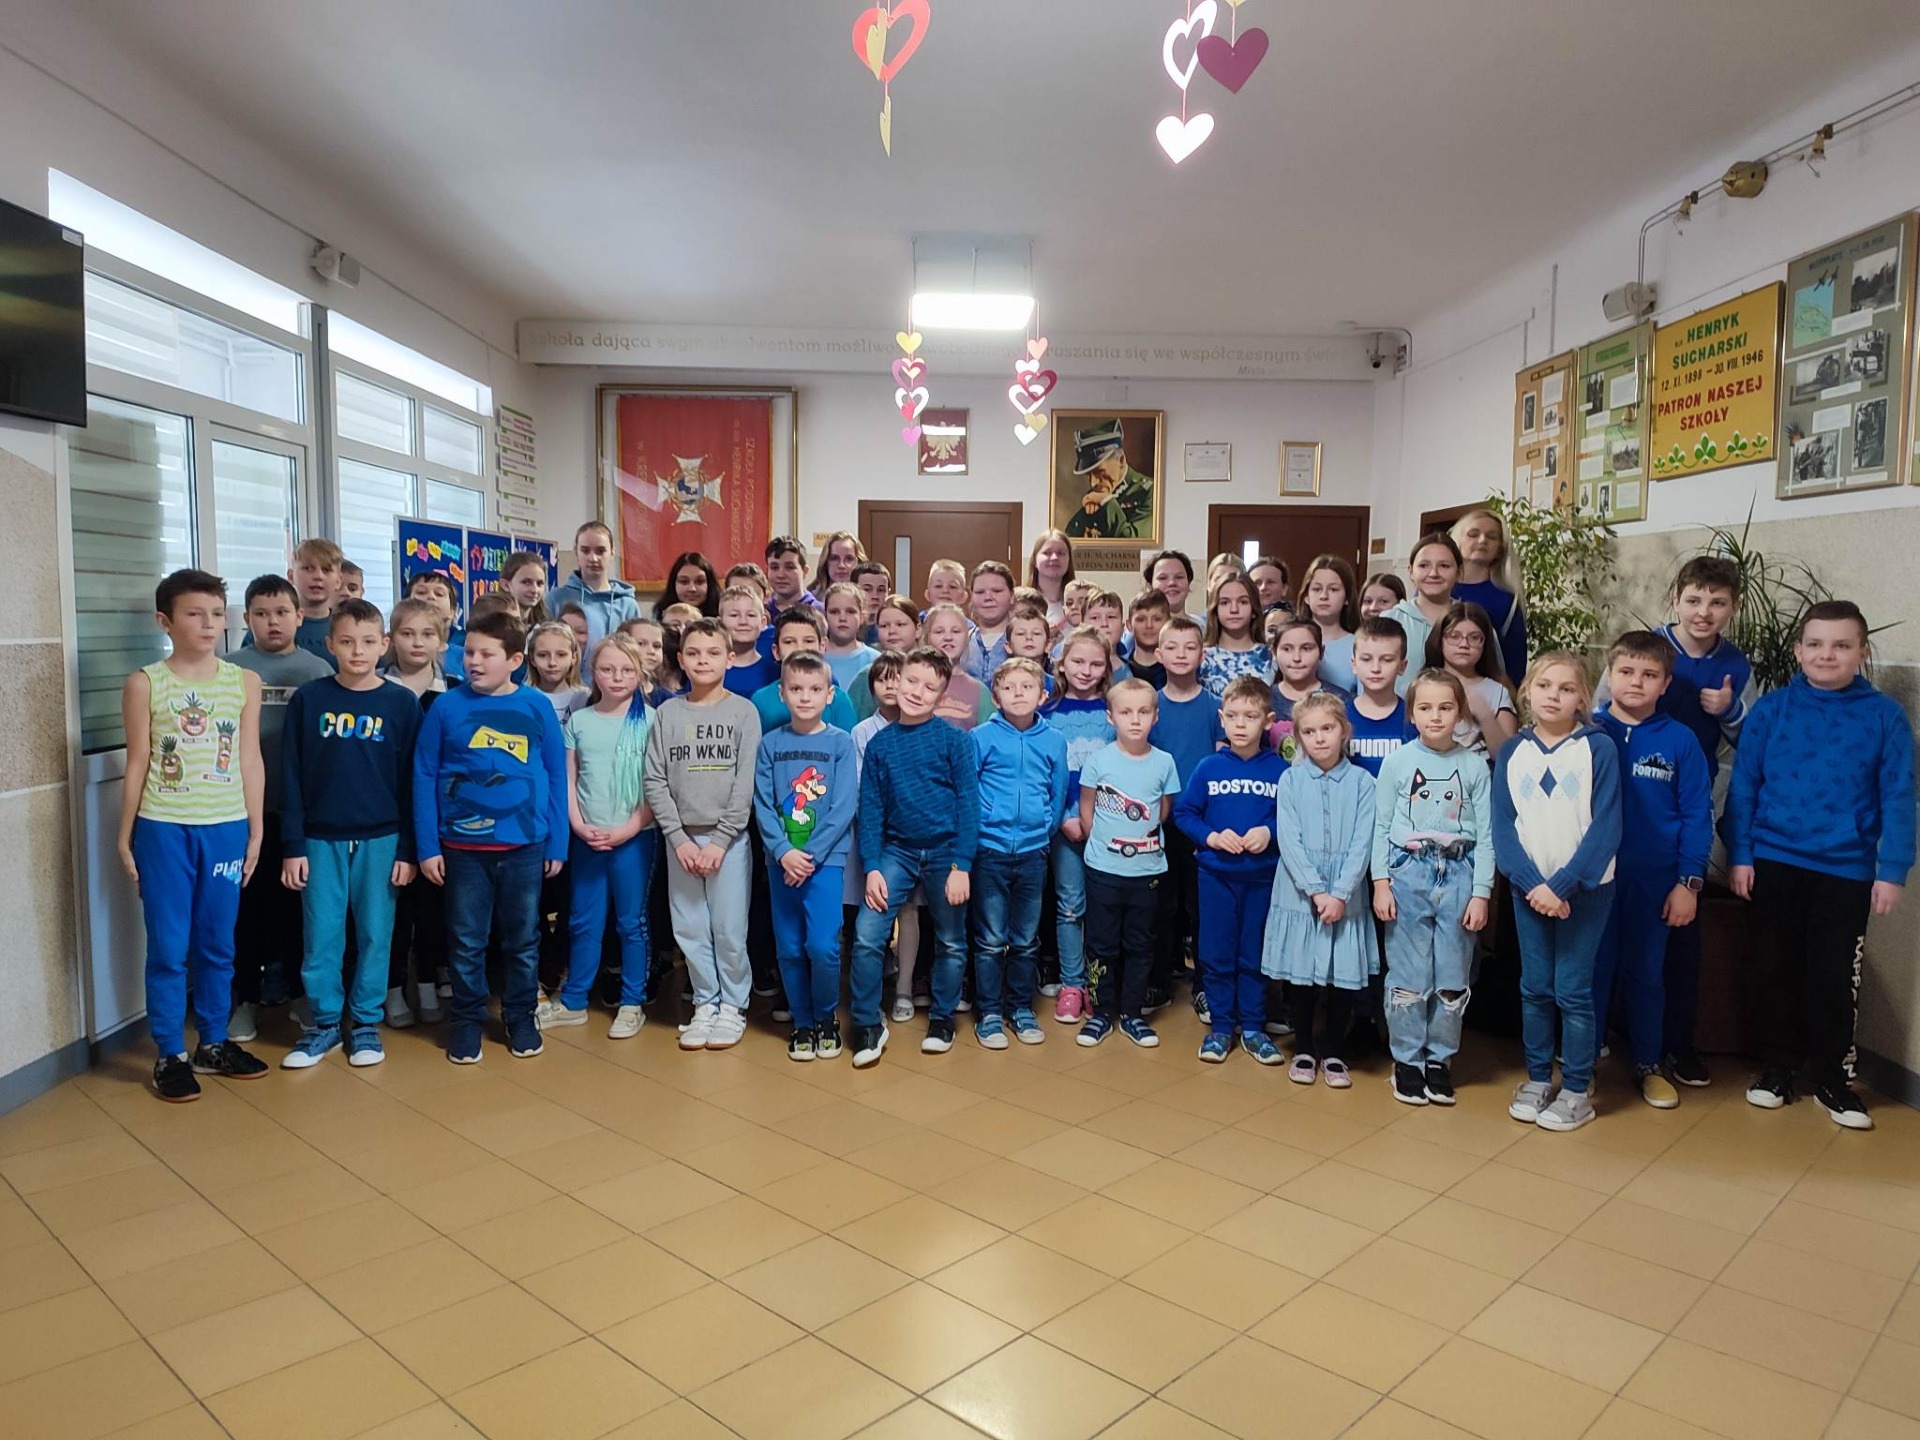 Uczniowie i nauczyciele na korytarzu szkolnym, ubrani w odcieniach niebieskiego.